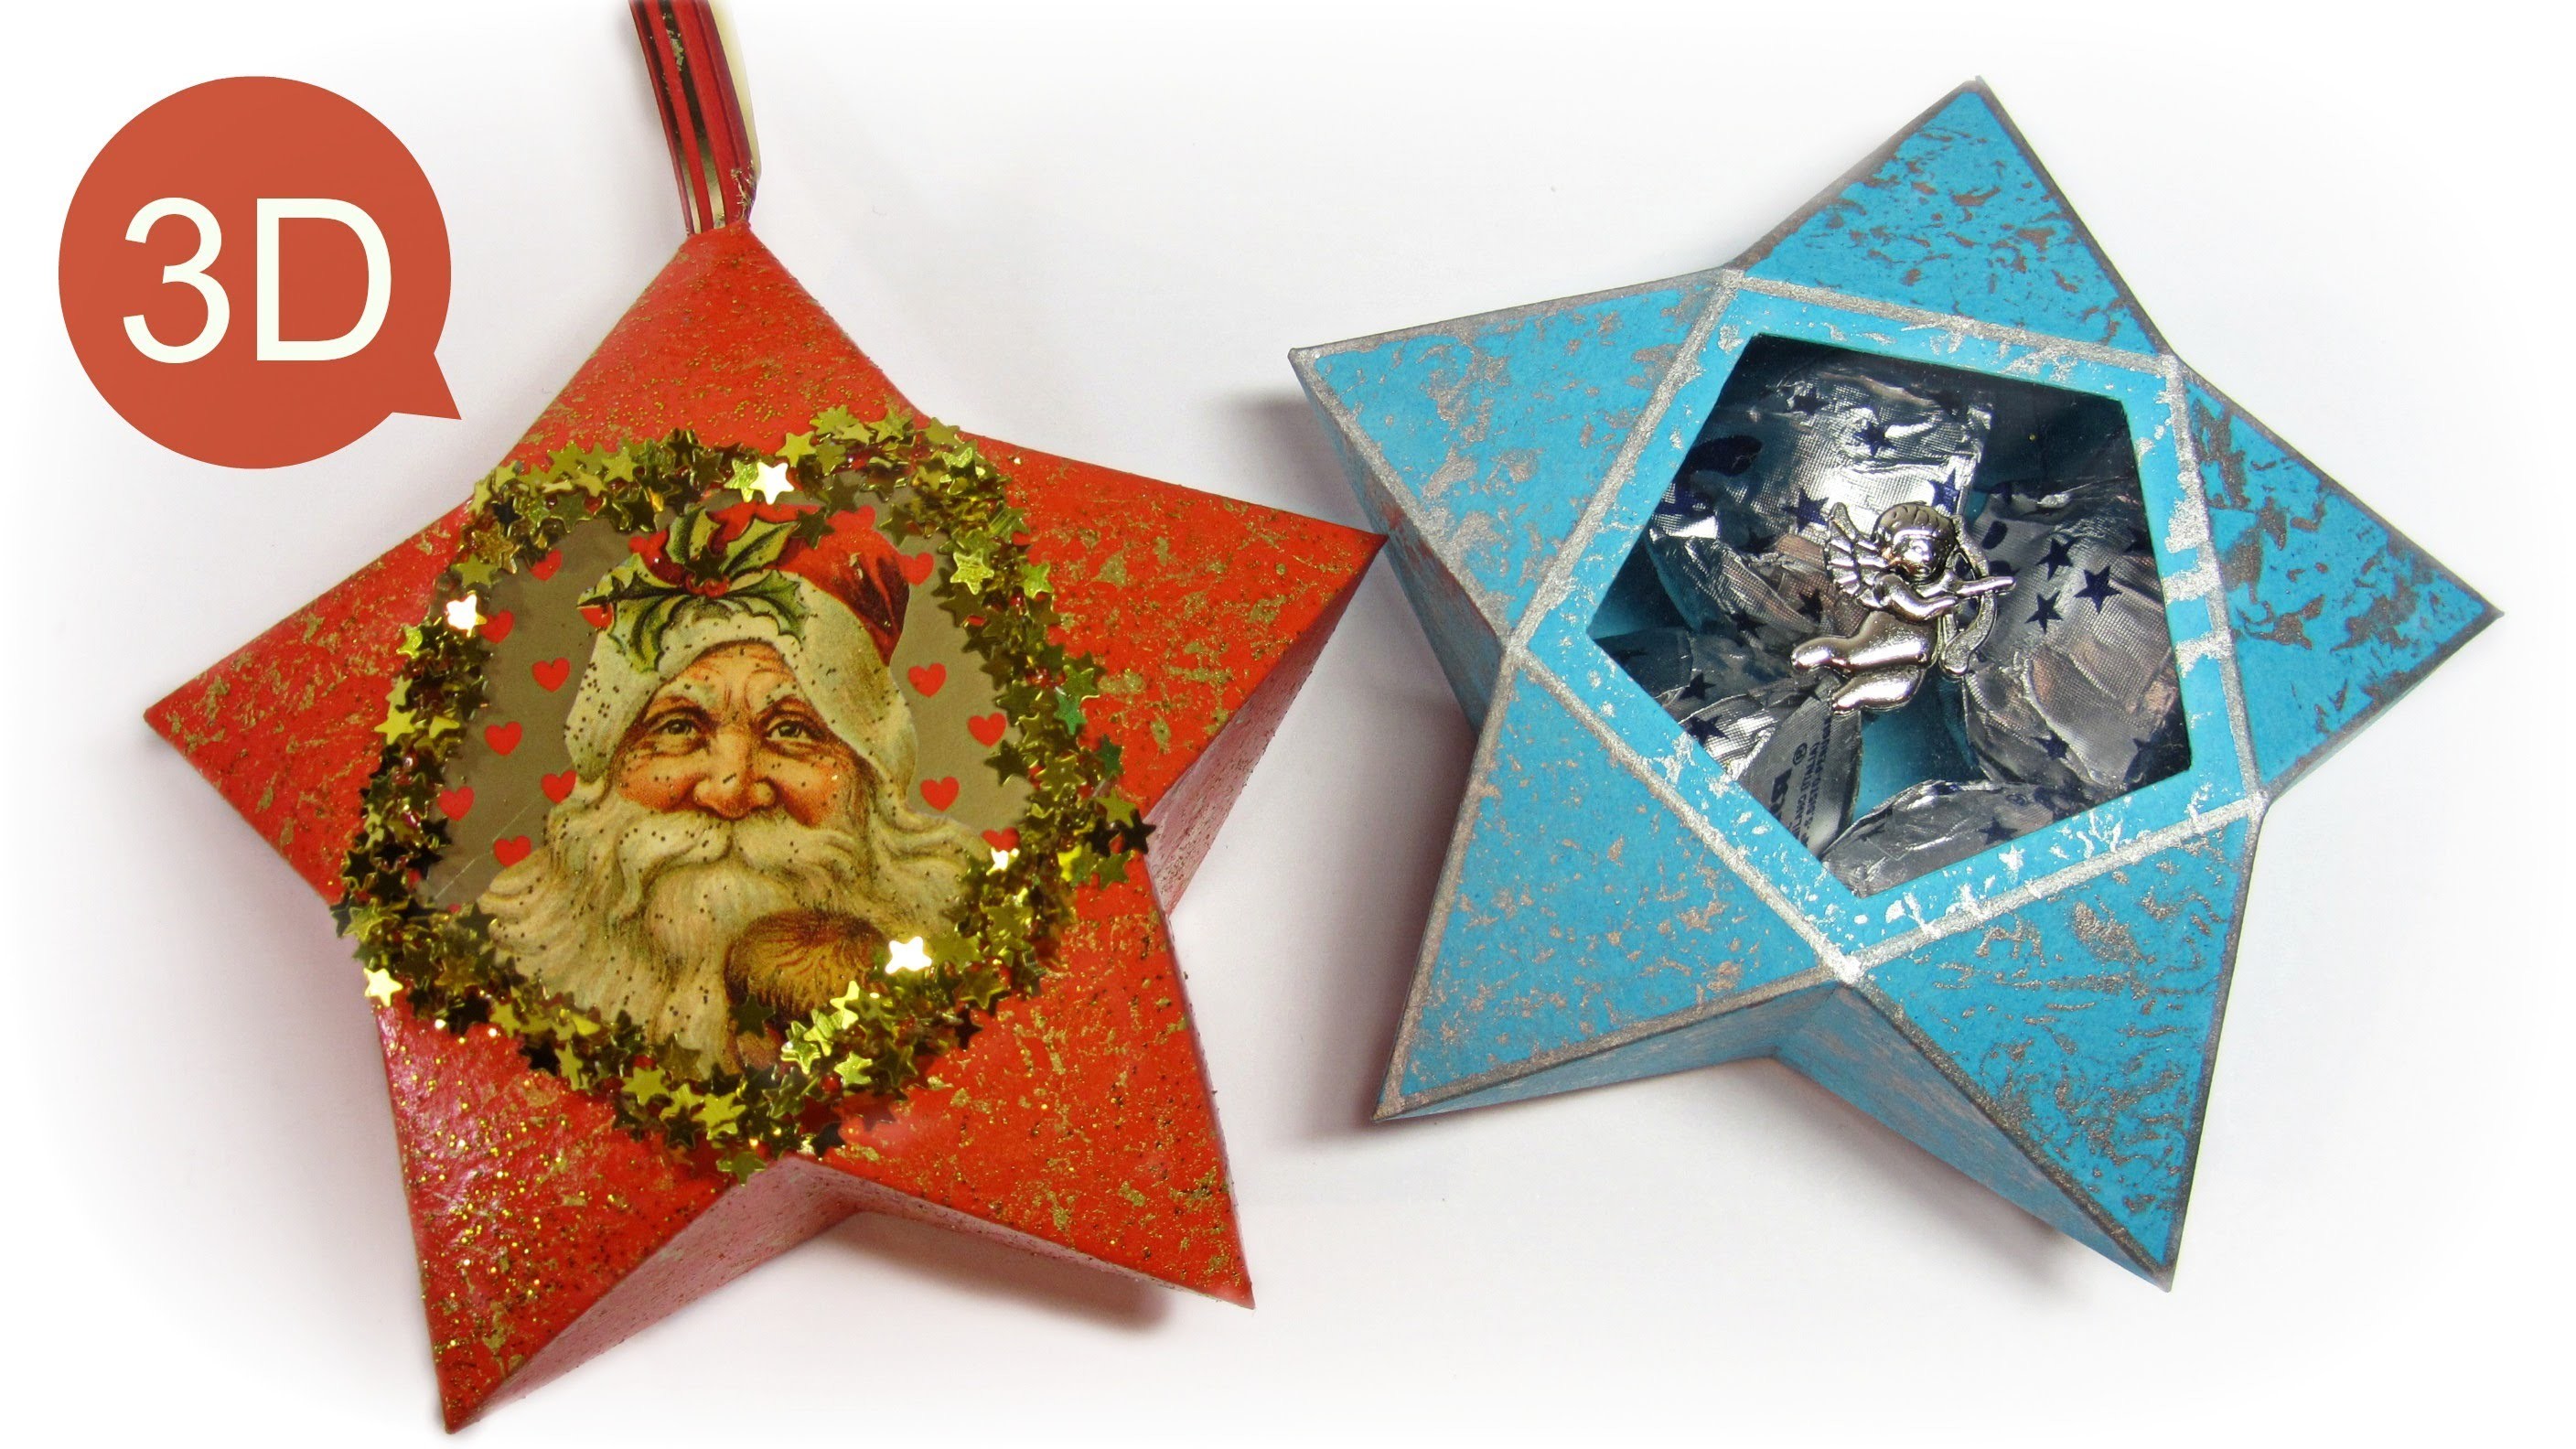 Adornos de Navidad: Cómo hacer estrellas de papel y para hacer regalos.